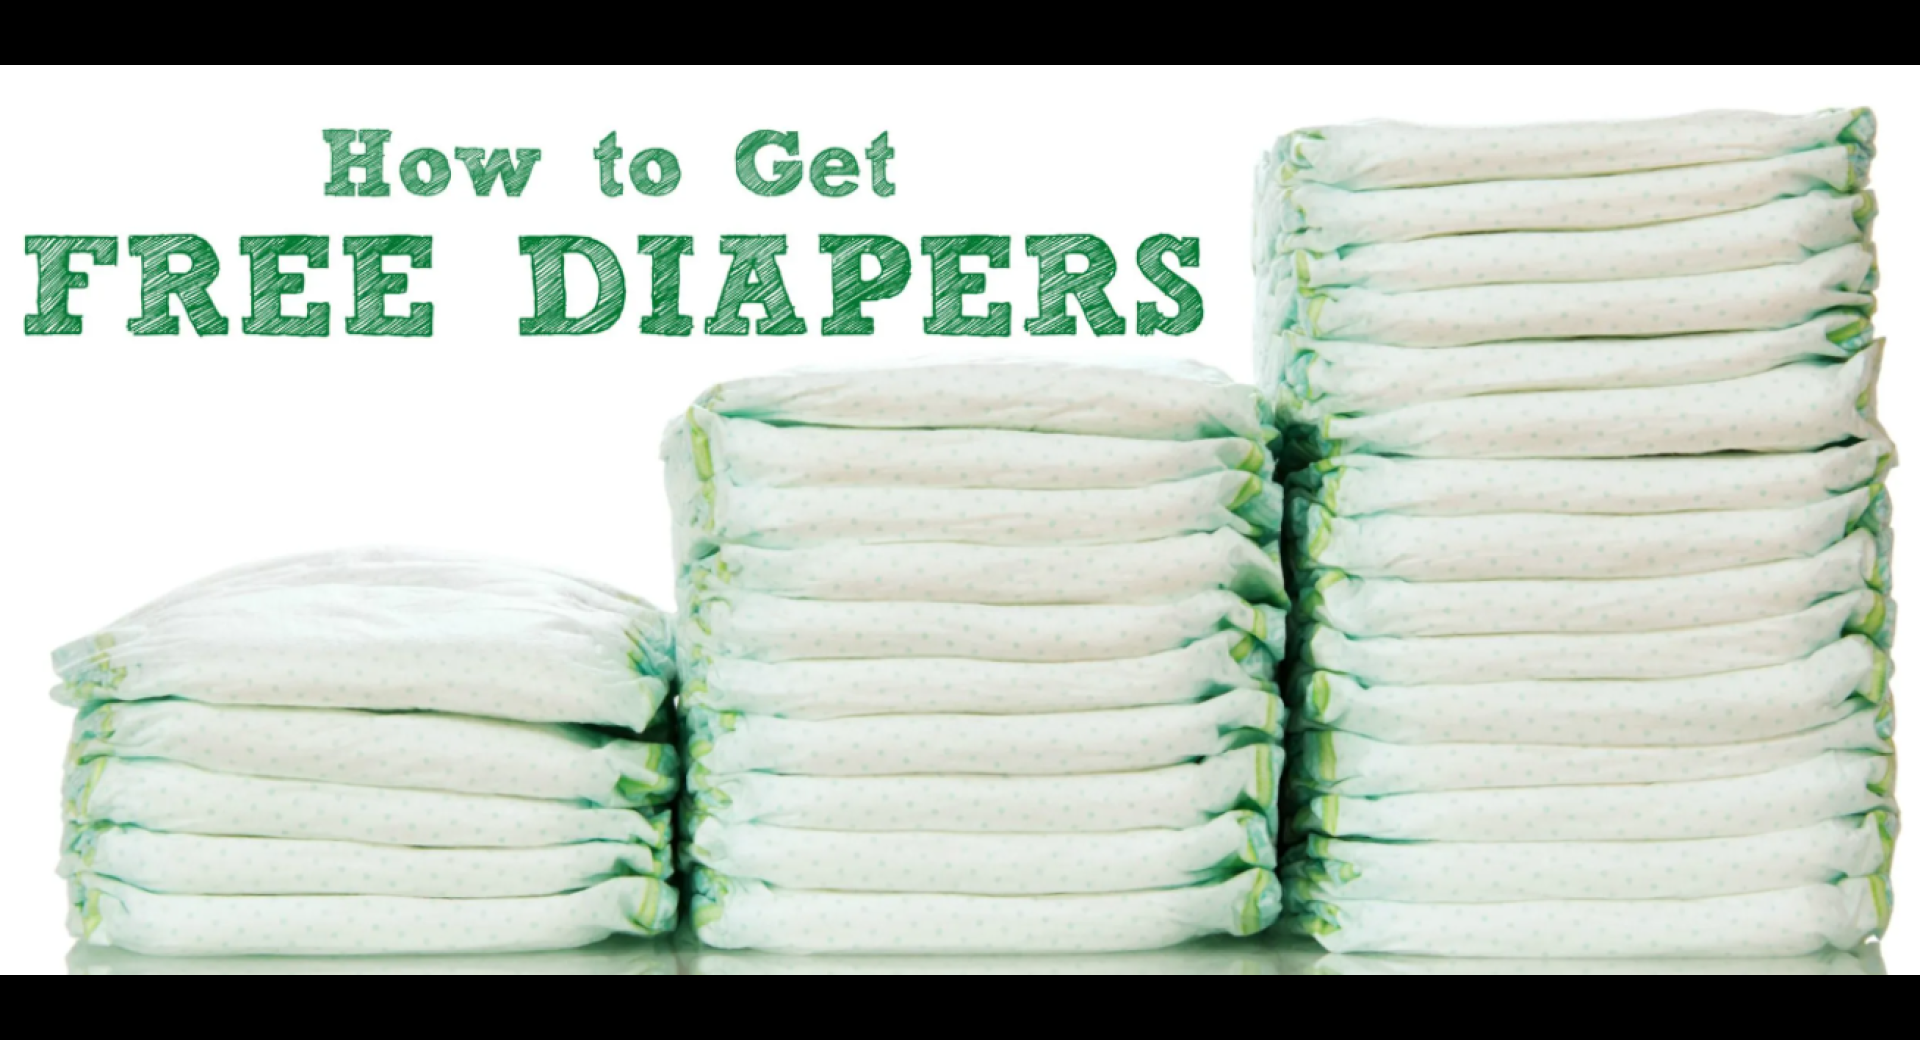 Diaper Bank Distribution